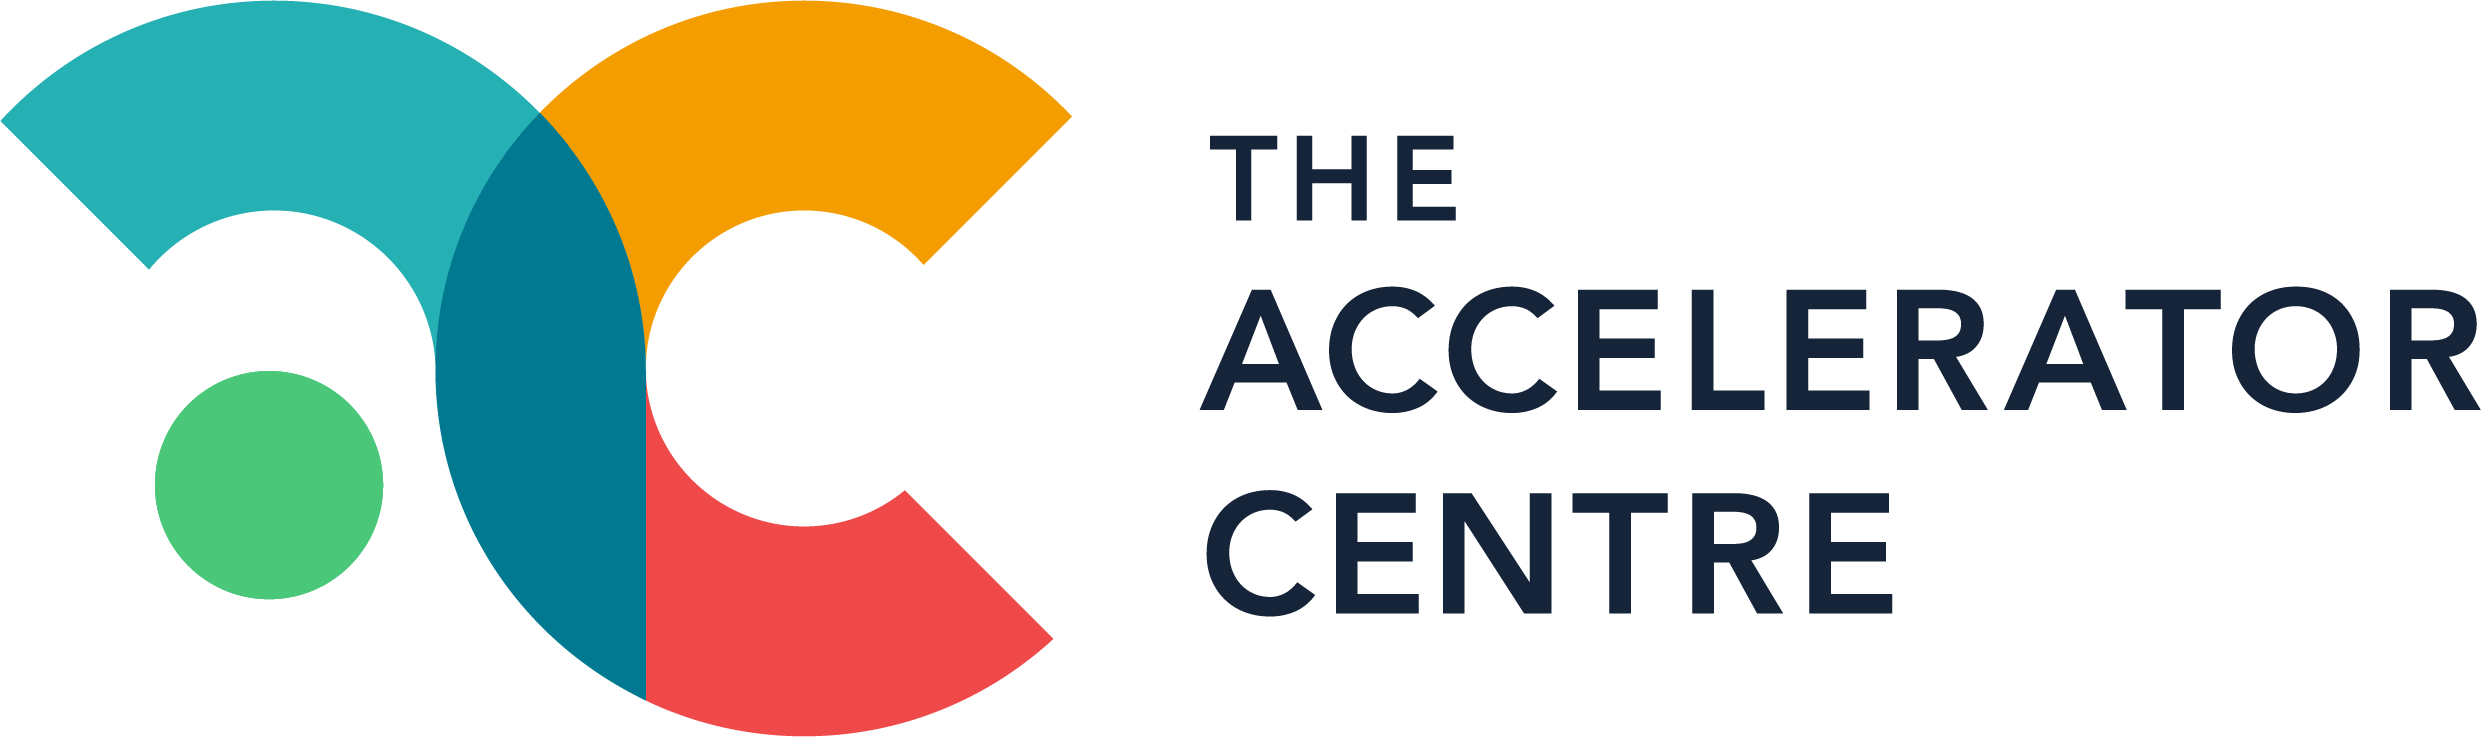 The Accelerator Centre logo